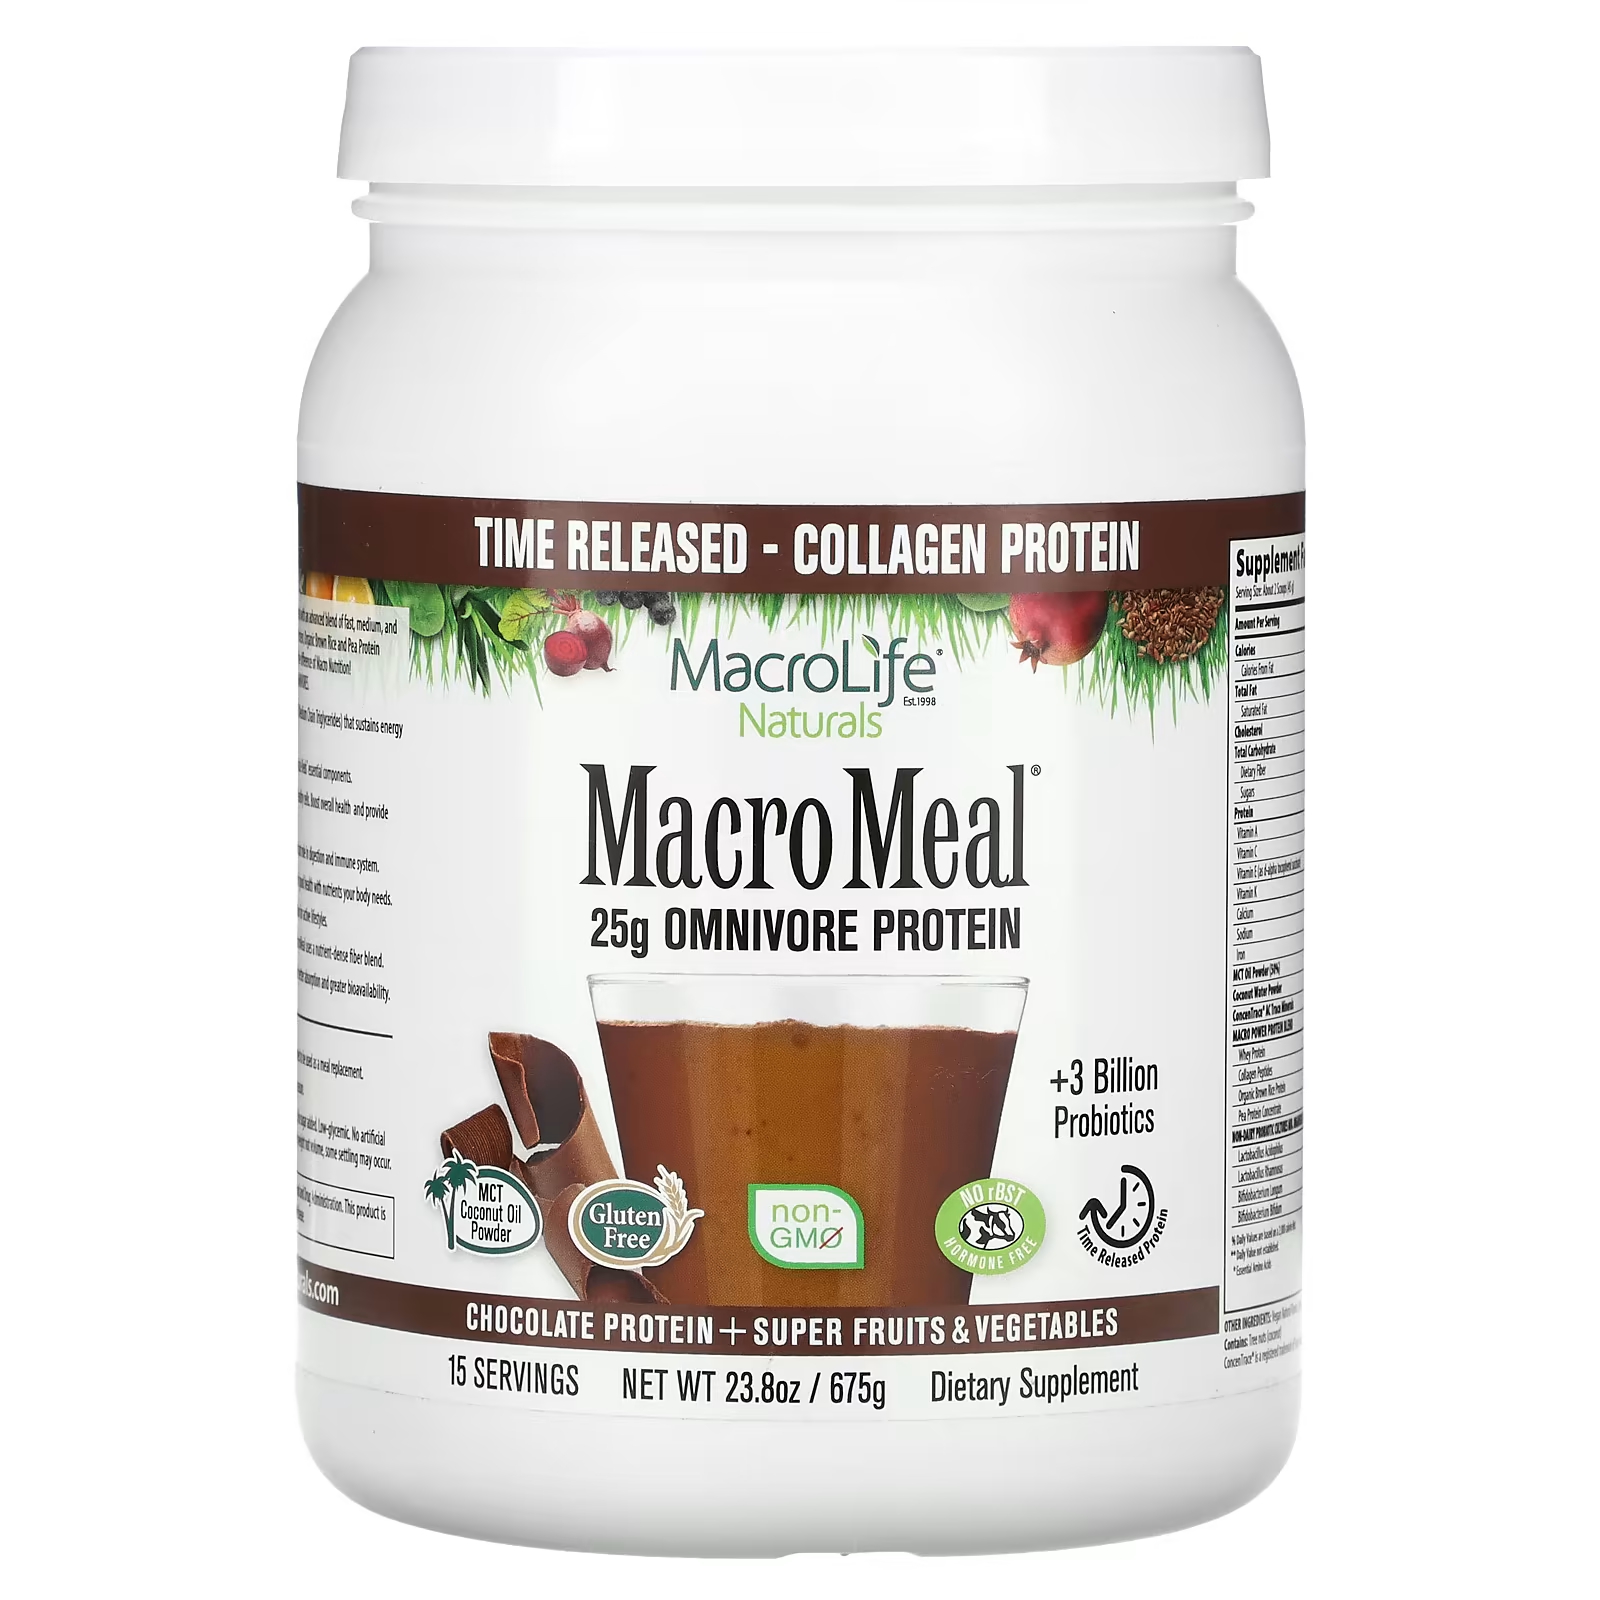 Macrolife Naturals MacroMeal Protein + суперфрукты и овощи, шоколад, 23,8 унции (675 г) macrolife naturals macropets ежедневный суперфуд для собак и кошек 180 г 6 35 унции